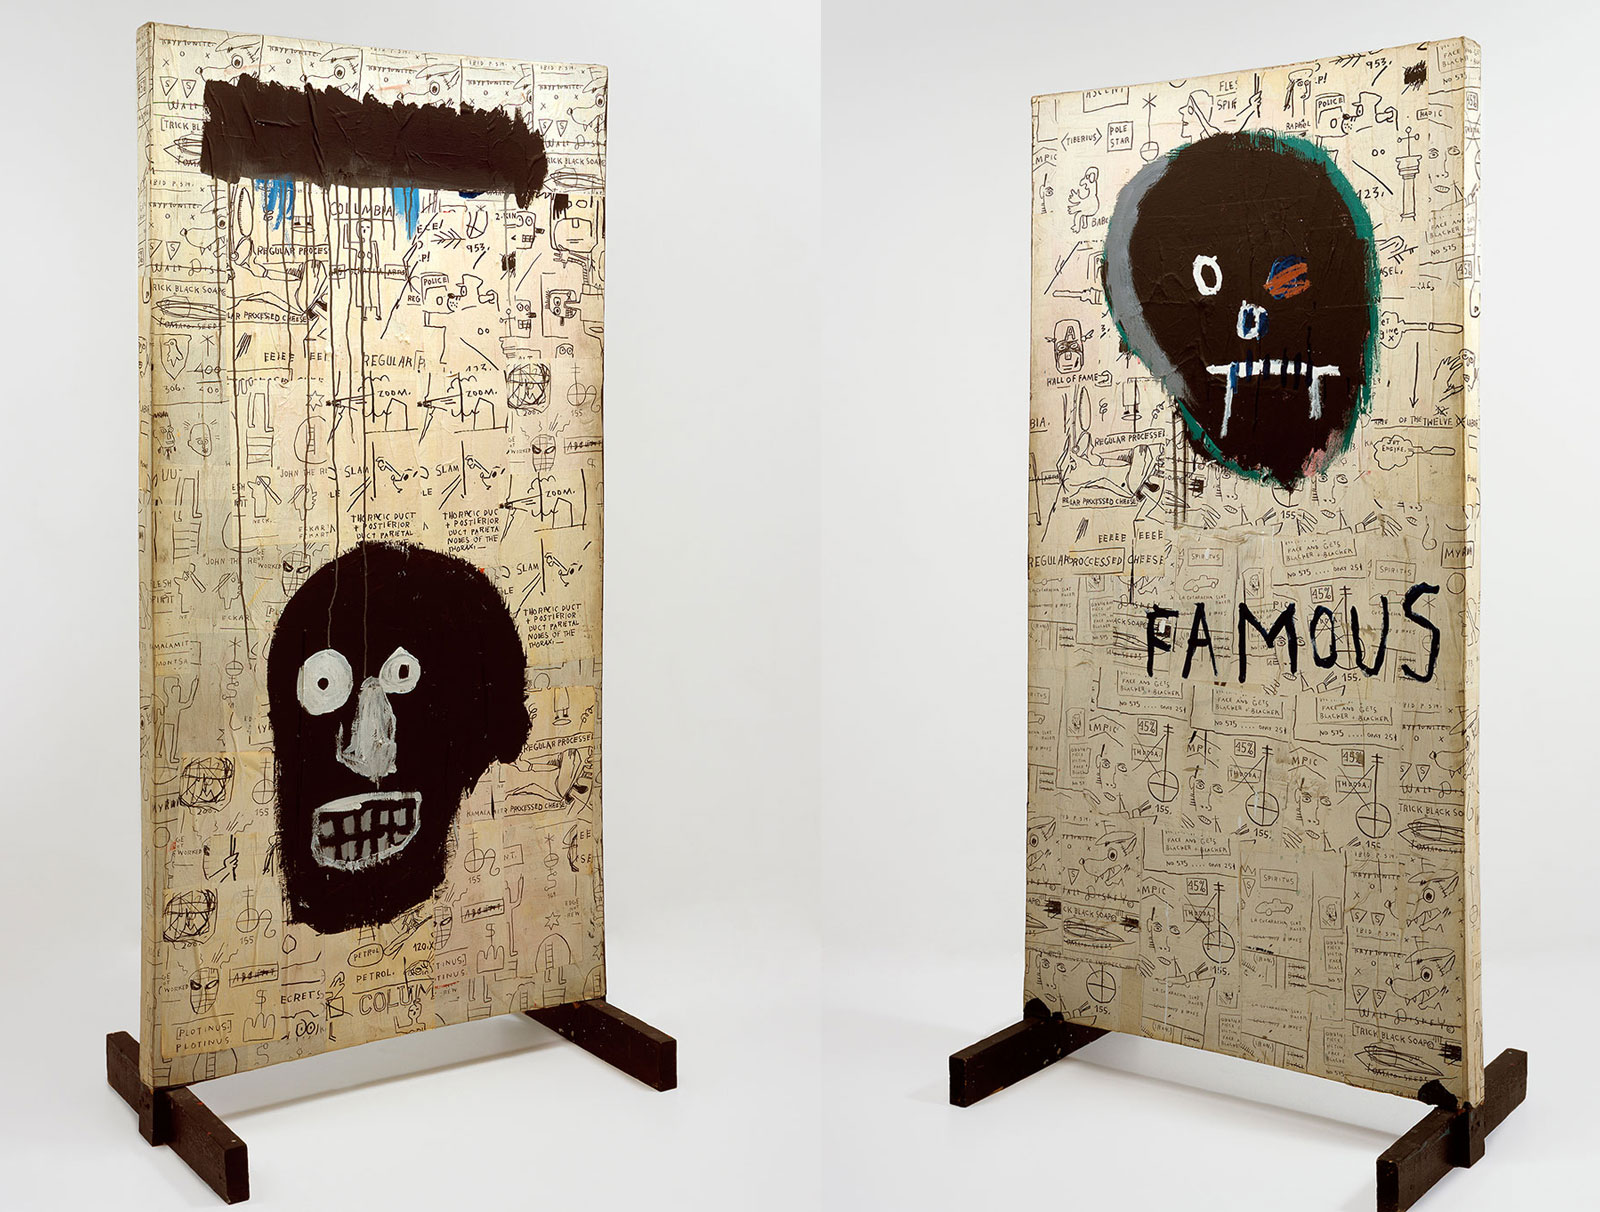 Jean-Michel Basquiat: Famous, 1982